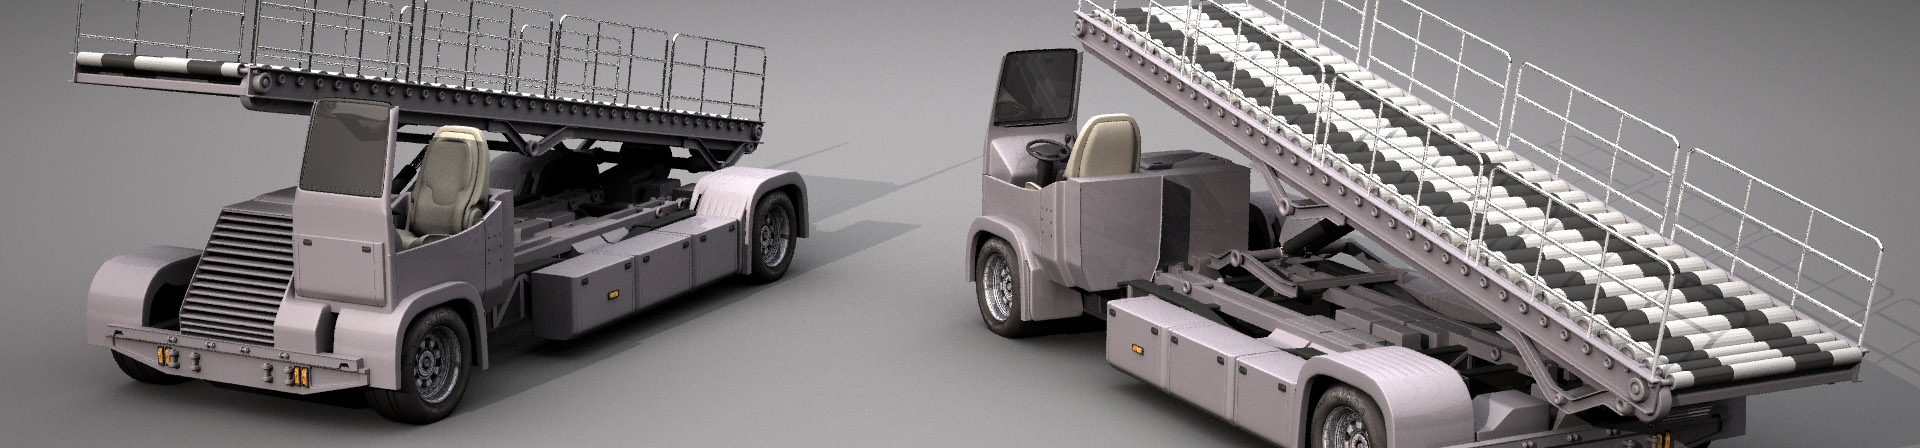 DOSCH 3D Airport Vehicles